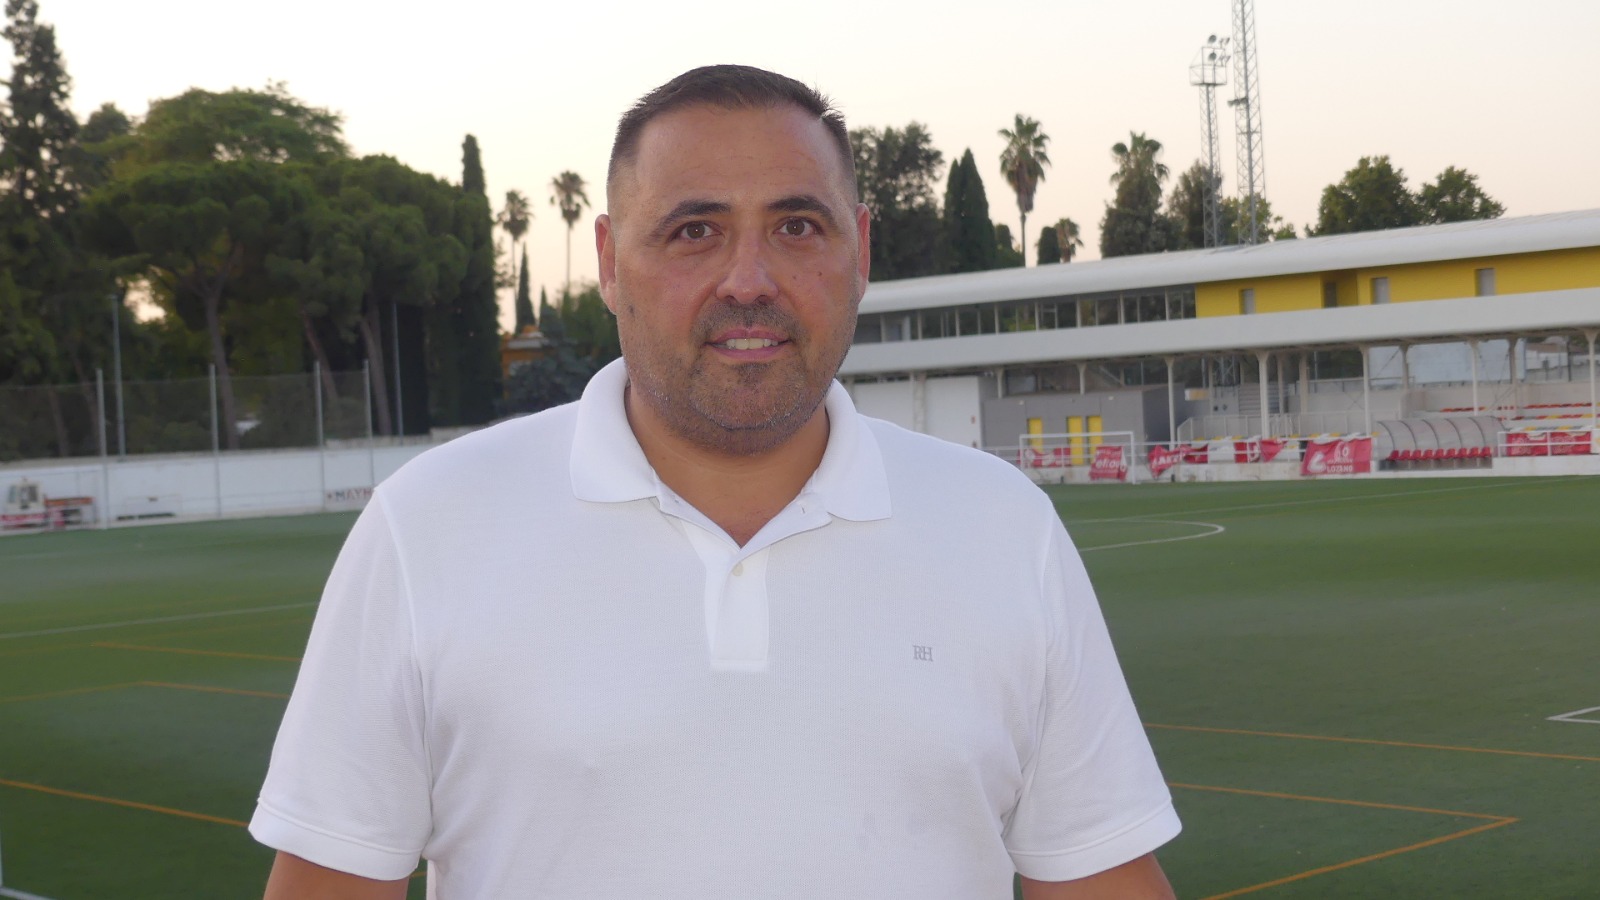 El utrerano Alfonso Berlanga firma como entrenador del Villafranco CF esta temporada